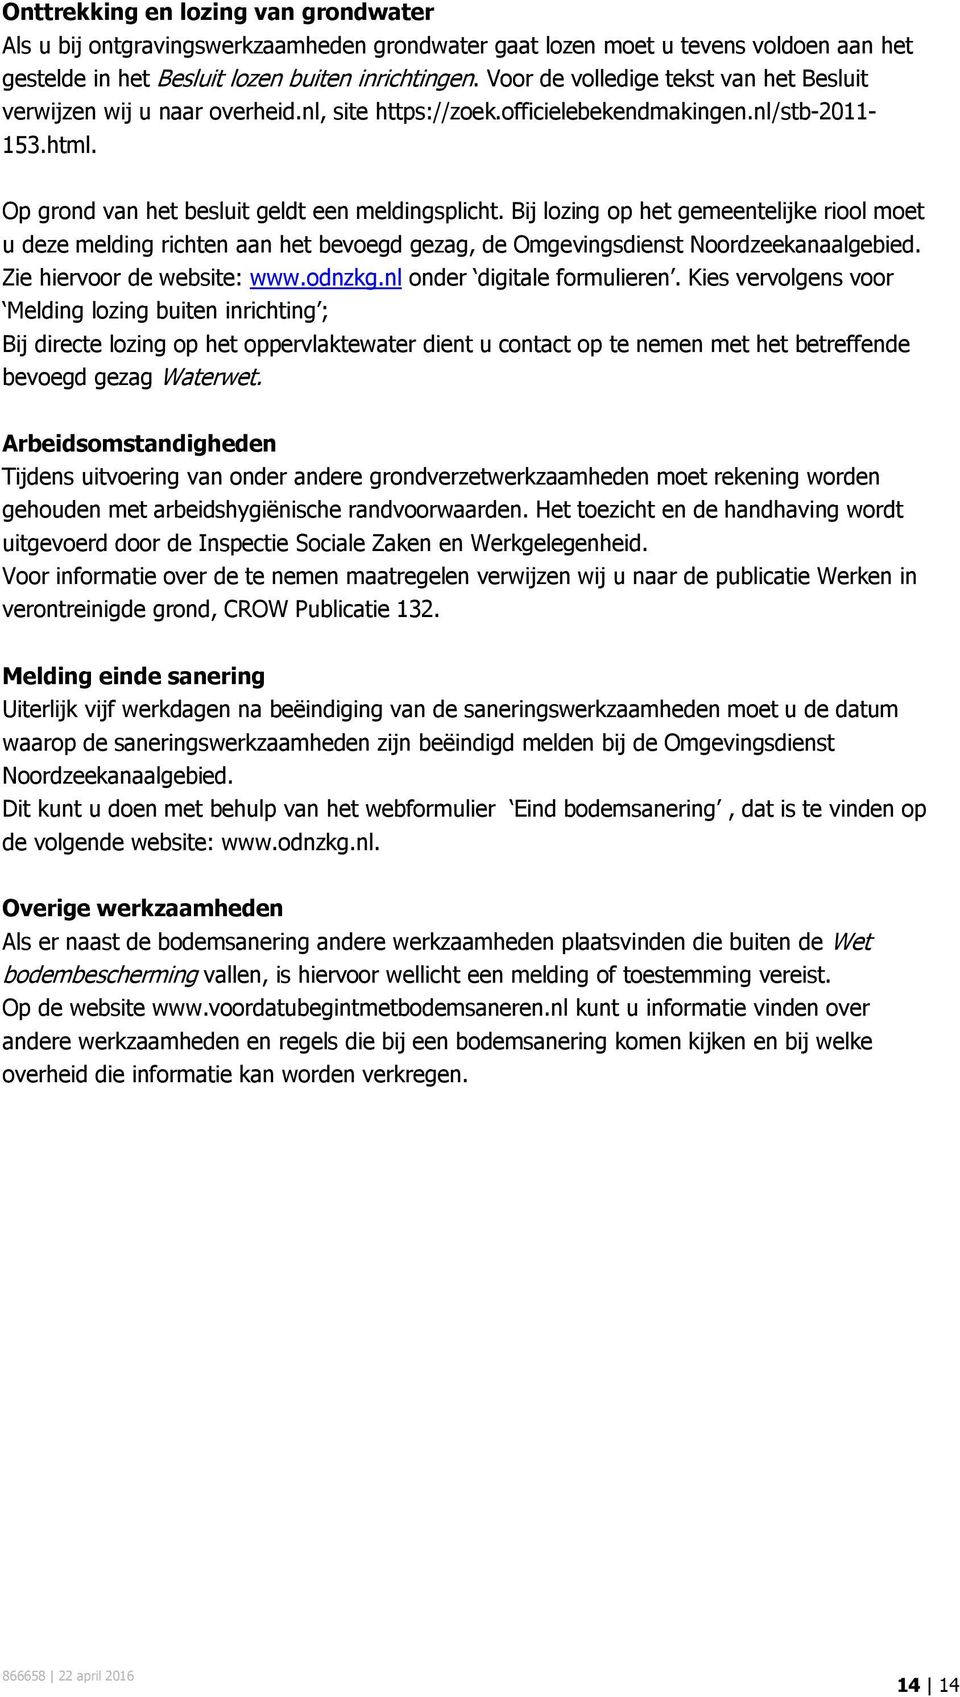 Bij lozing op het gemeentelijke riool moet u deze melding richten aan het bevoegd gezag, de Omgevingsdienst Noordzeekanaalgebied. Zie hiervoor de website: www.odnzkg.nl onder digitale formulieren.